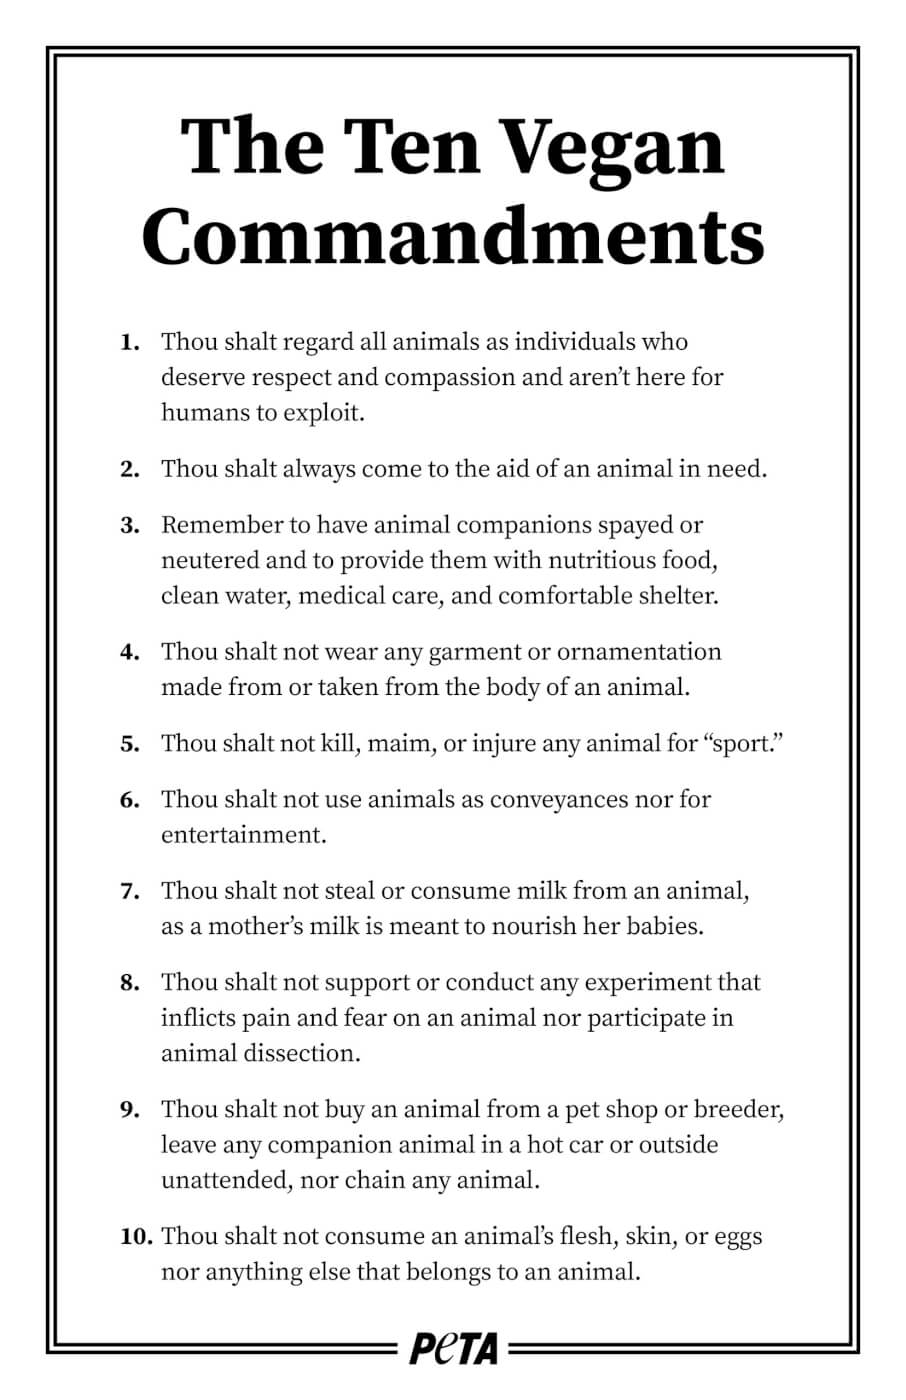 The Ten Vegan Commandments